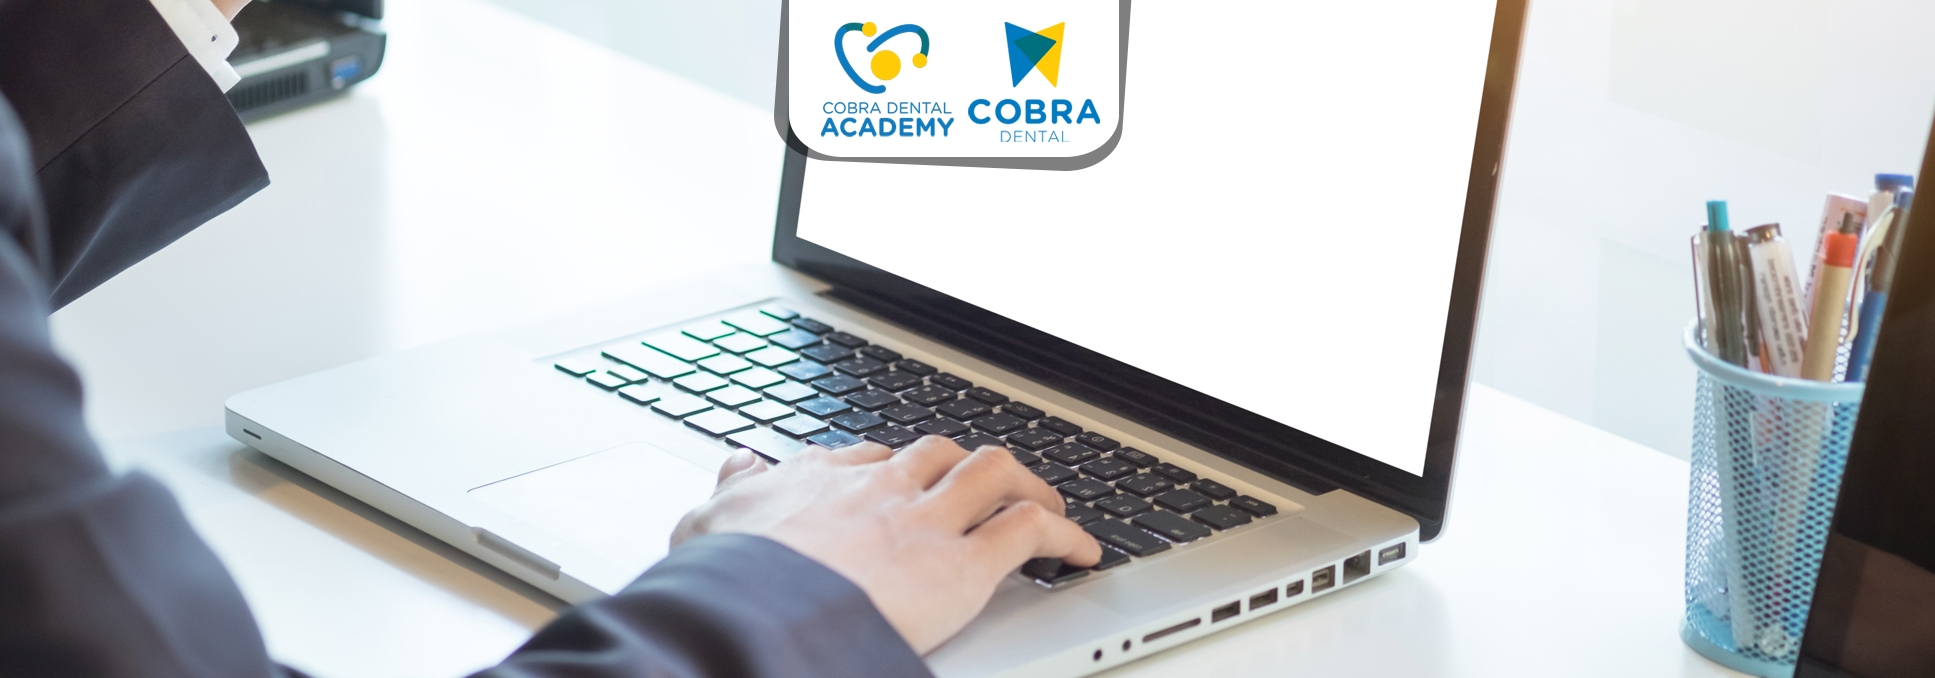 Pelatihan CDAKB Untuk Seluruh Penanggung Jawab Teknis (PJT) Cabang Cobra Dental.